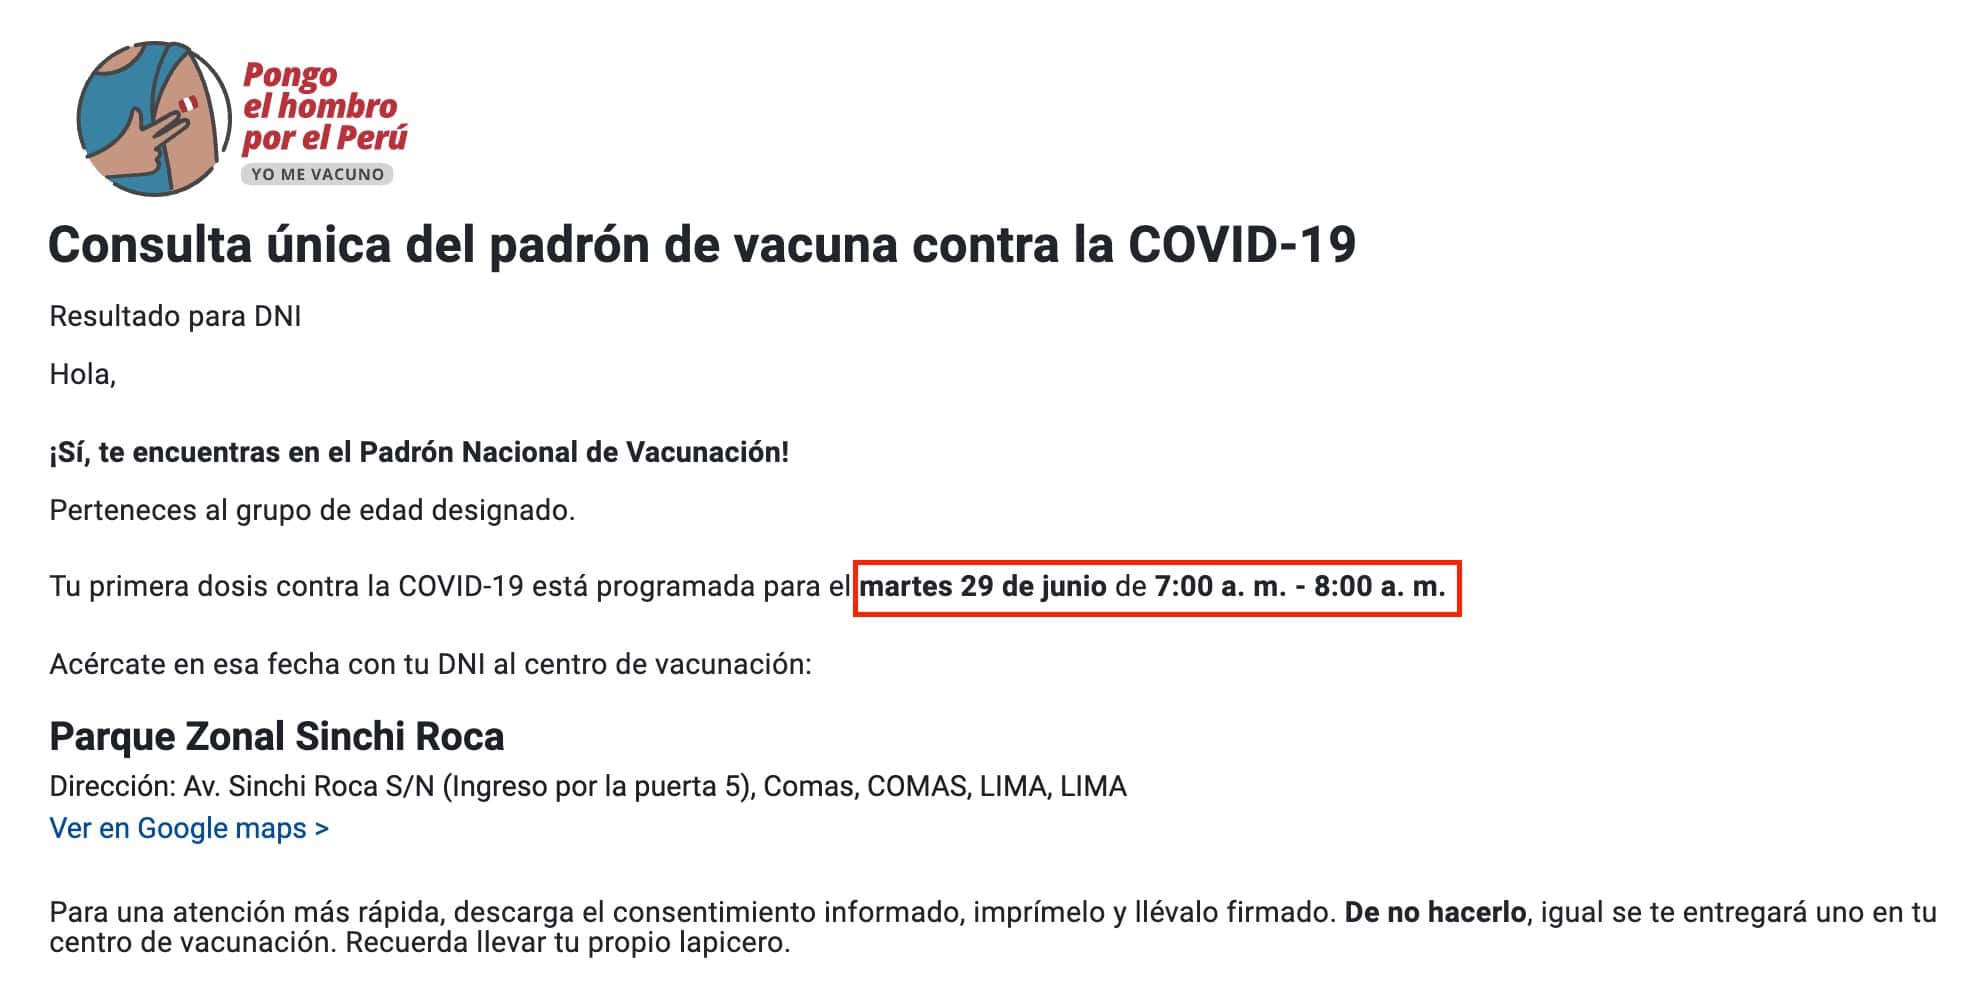 Consulta unica del padron de vacuna contra la COVID-19